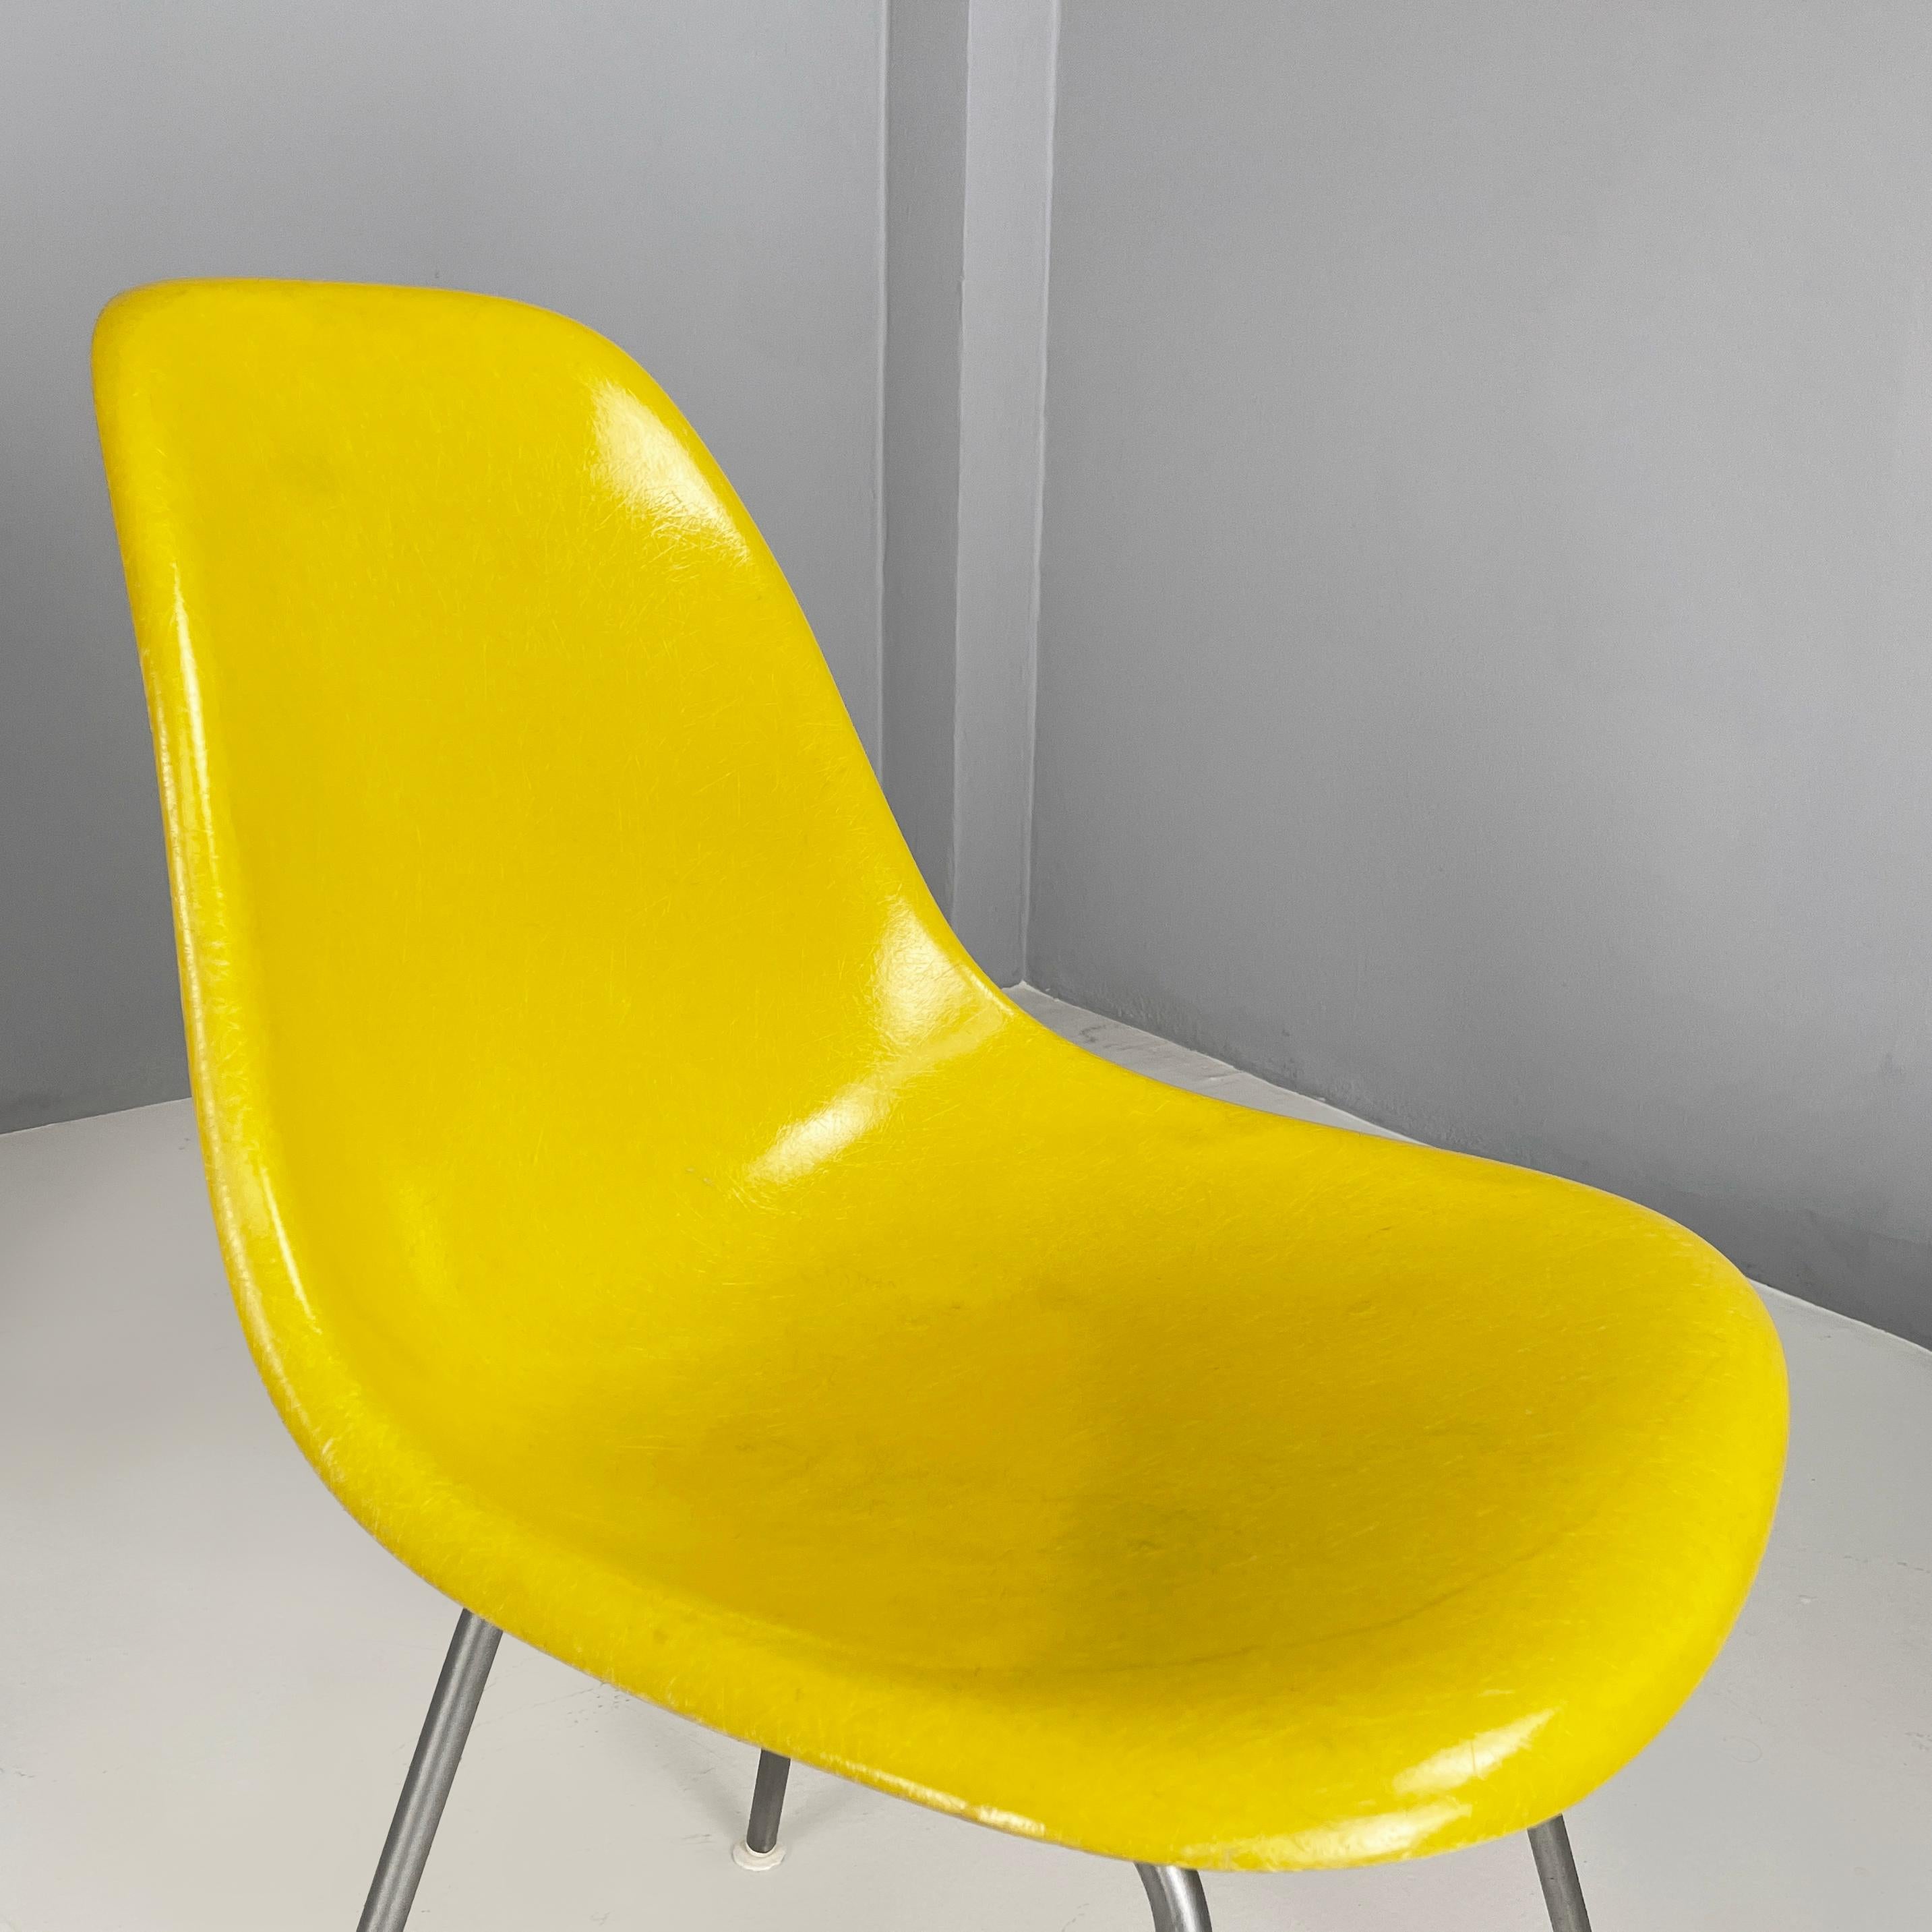 American Yellow Shell Chairs von Charles und Ray Eames für Herman Miller, 1970er Jahre (Late 20th Century) im Angebot